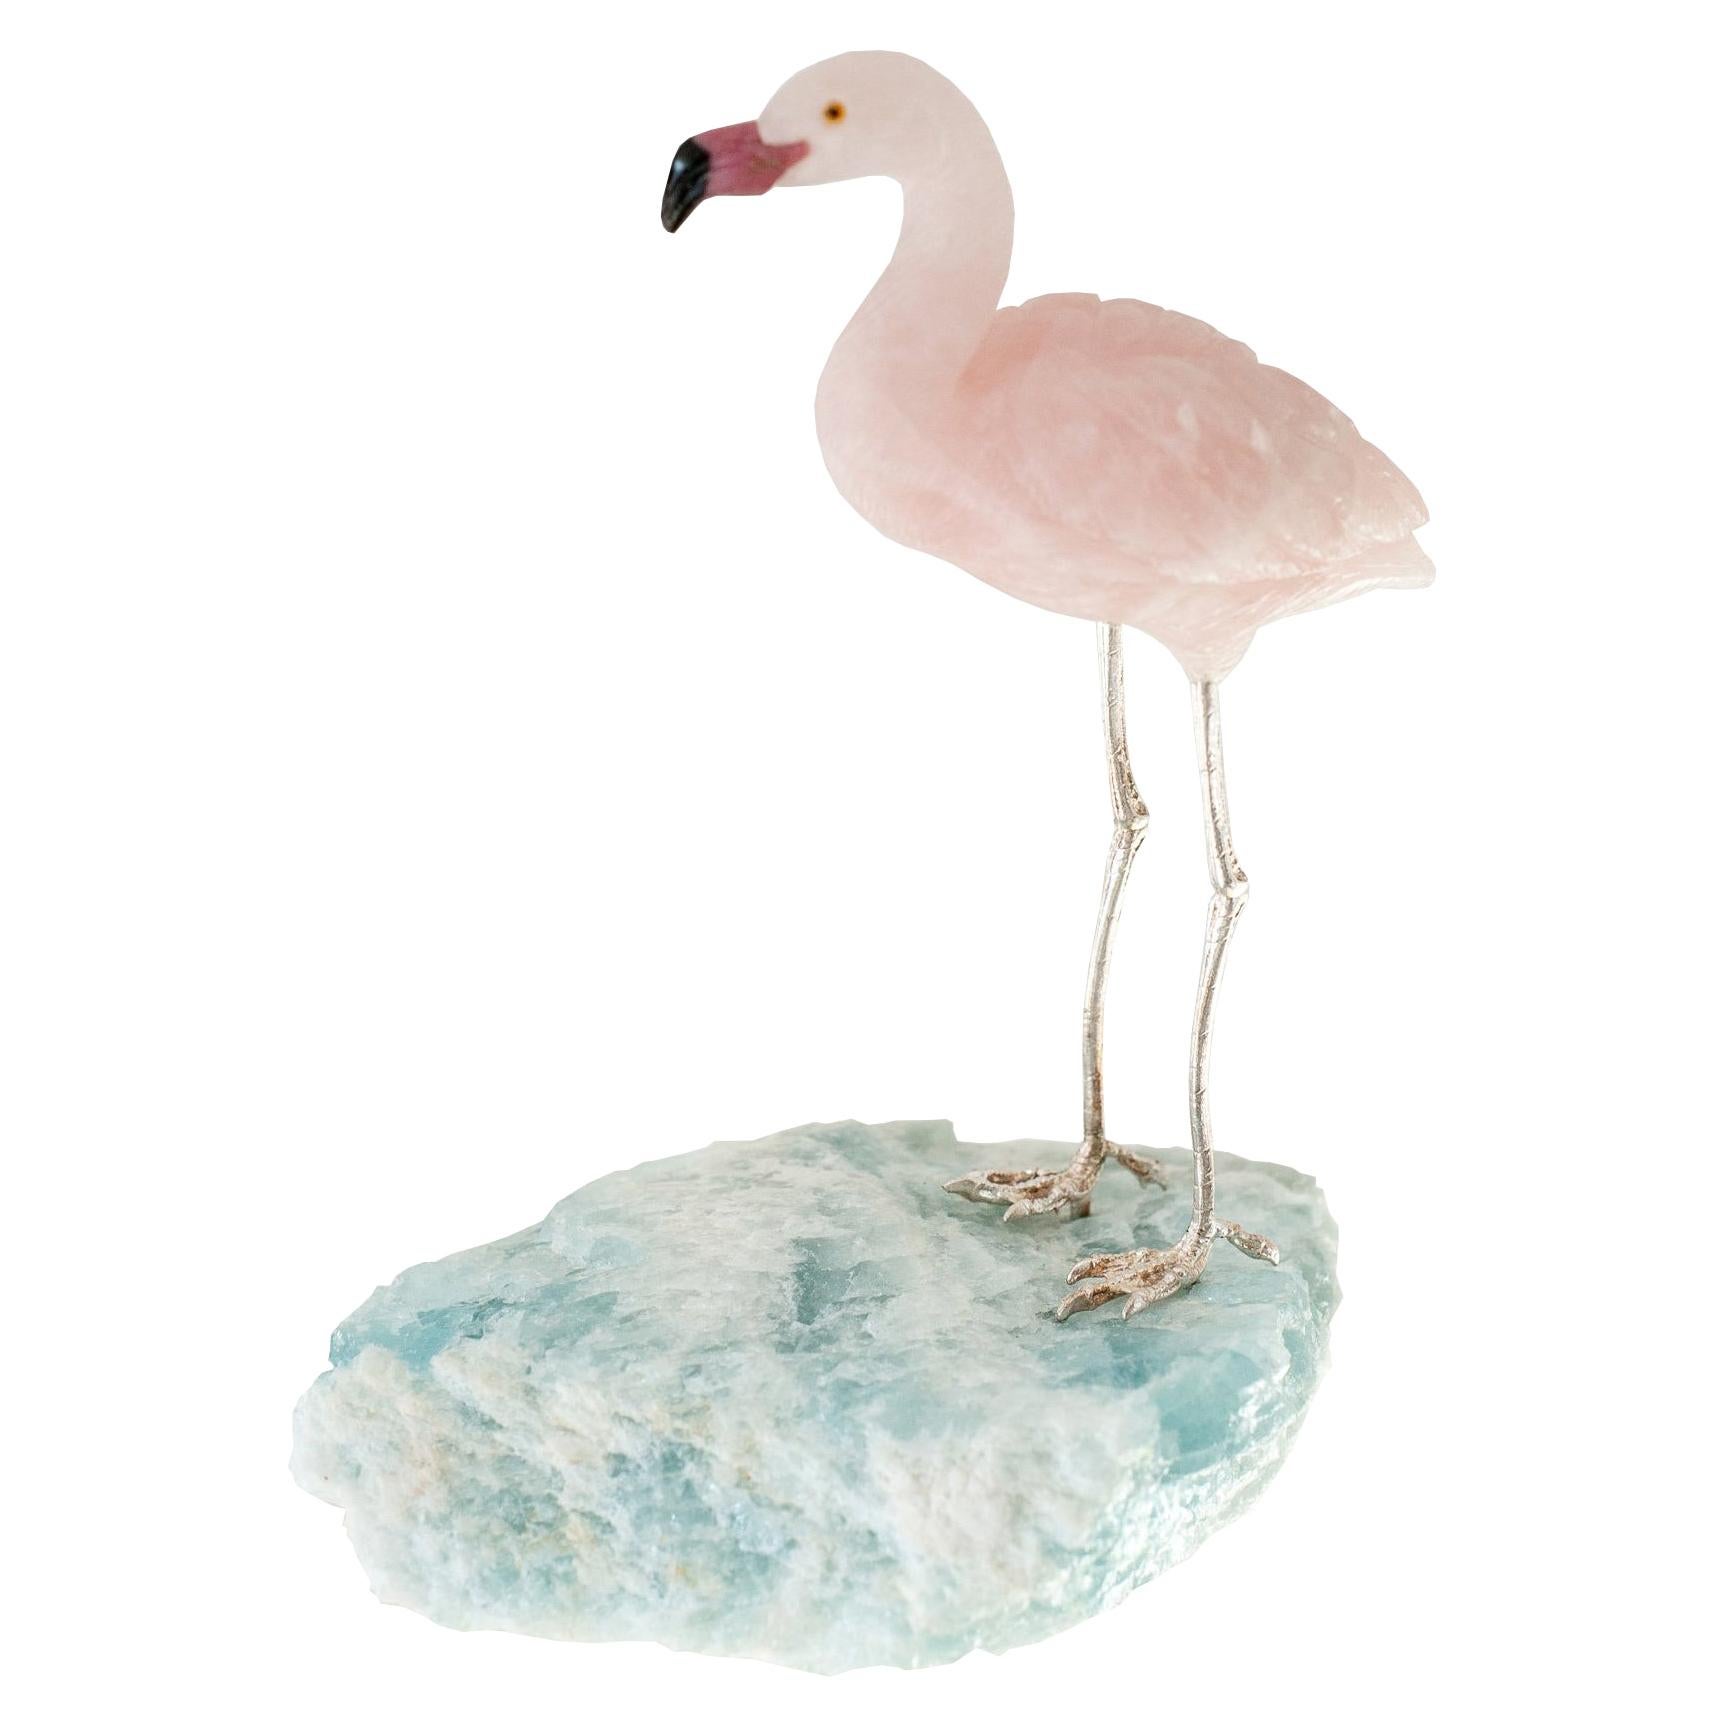 Rose Quartz Flamingo on an Aquamarine Mineral Specimen Base